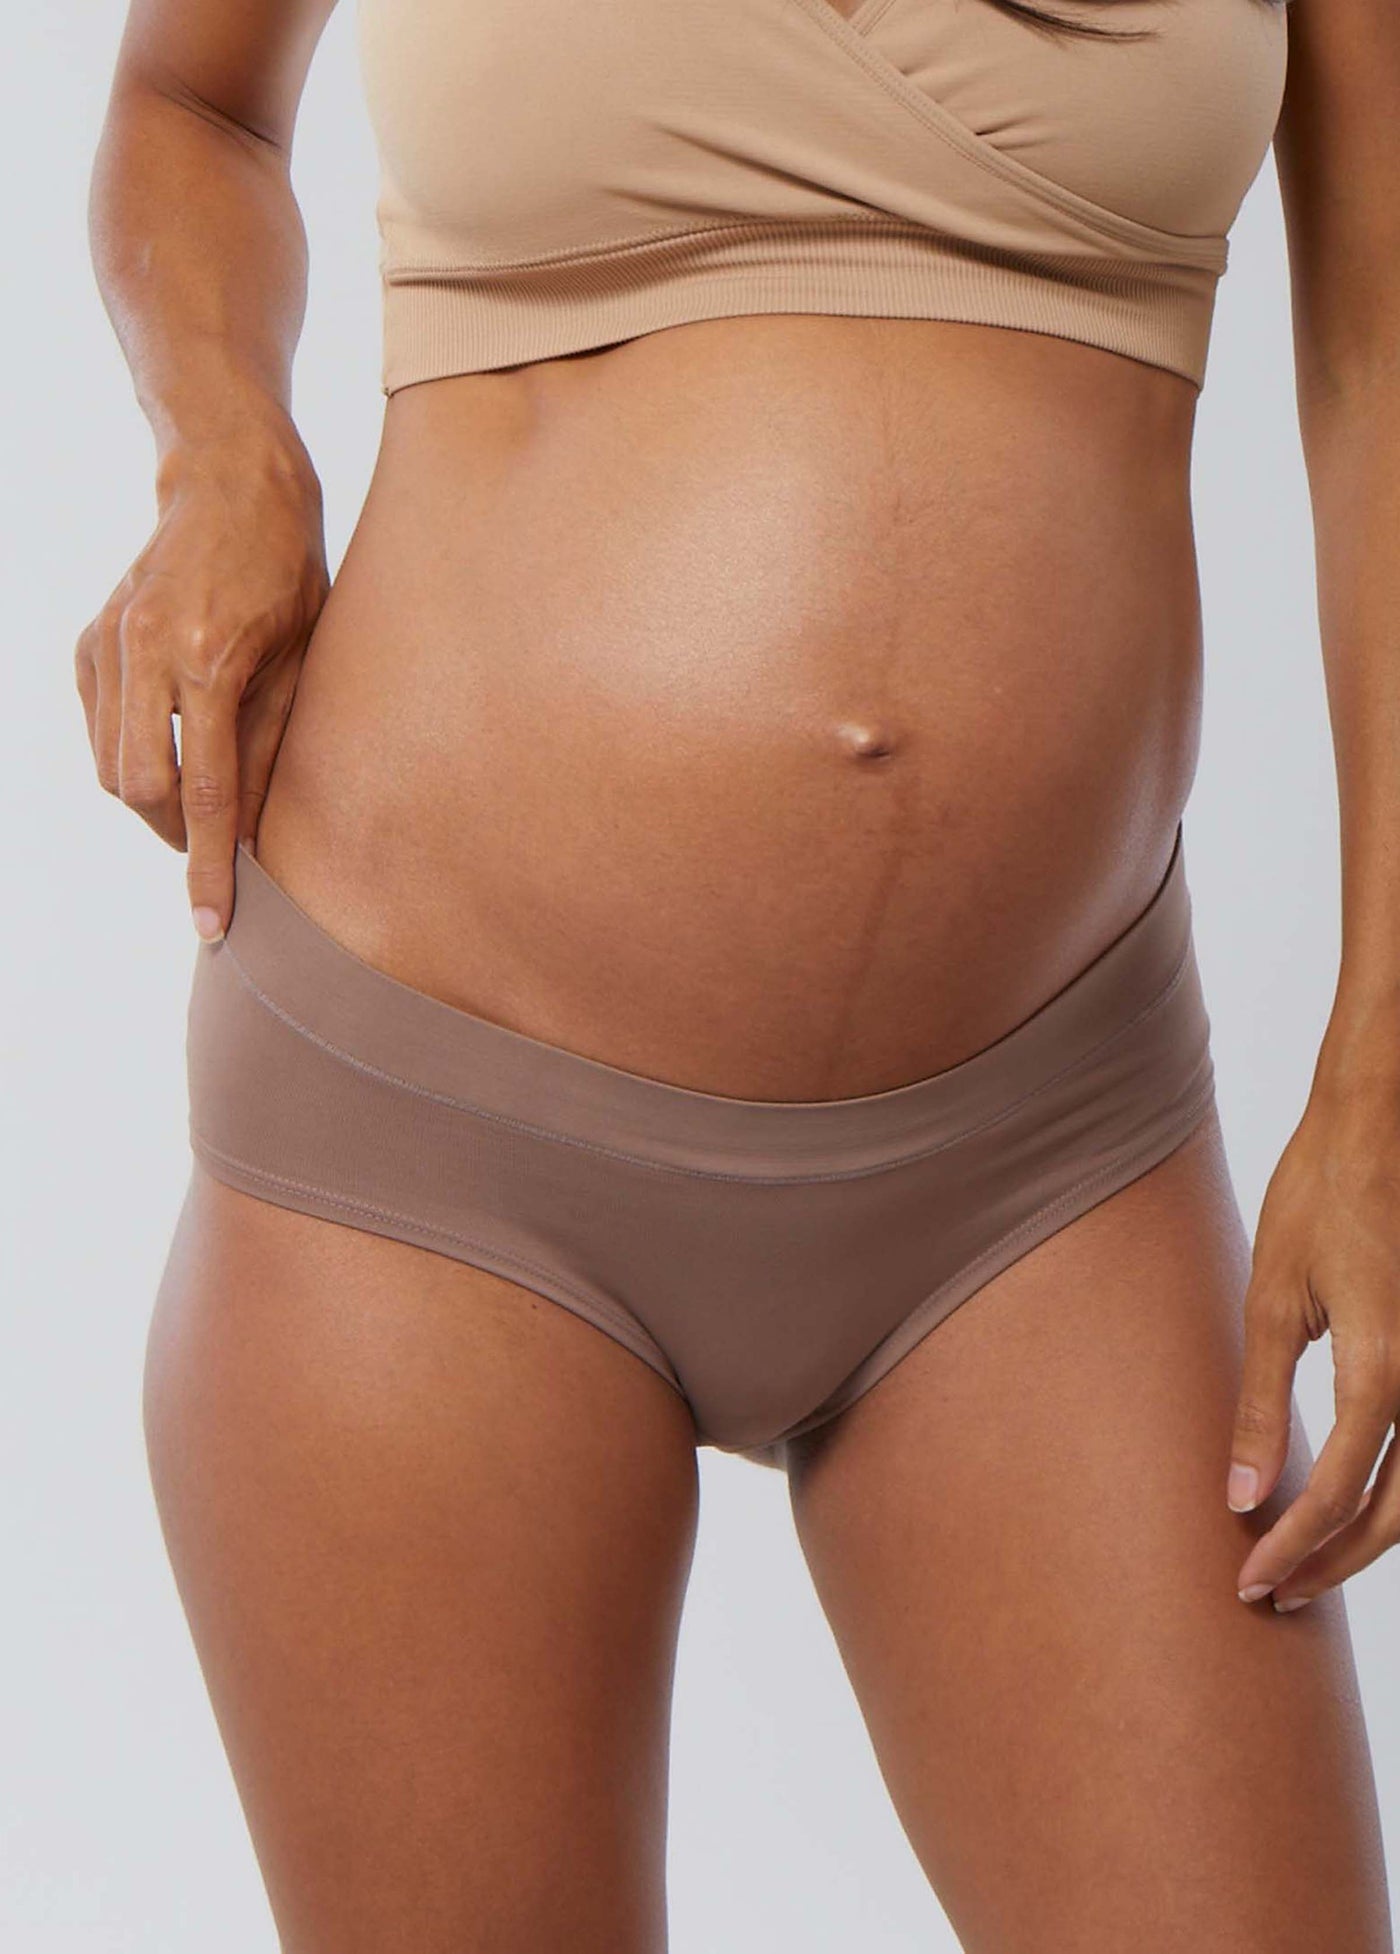 deli umut verici çok hoş pregnant in underwear 